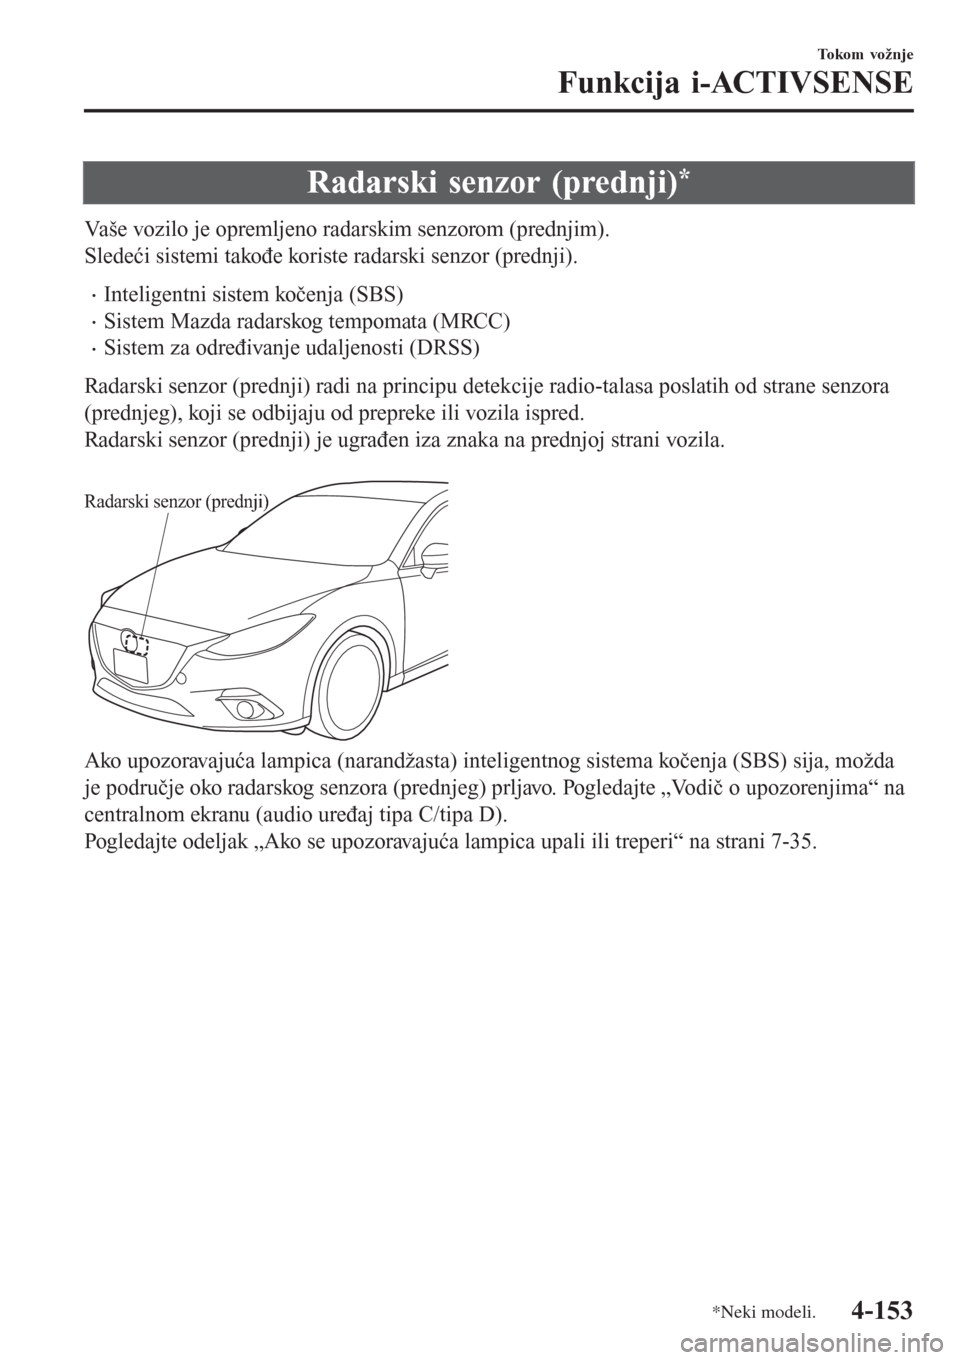 MAZDA MODEL 3 HATCHBACK 2015  Korisničko uputstvo (in Serbian) Radarski senzor (prednji)*
Vaše vozilo je opremljeno radarskim senzorom (prednjim).
Sledeći sistemi takođe koriste radarski senzor (prednji).
•Inteligentni sistem kočenja (SBS)
•Sistem Mazda r